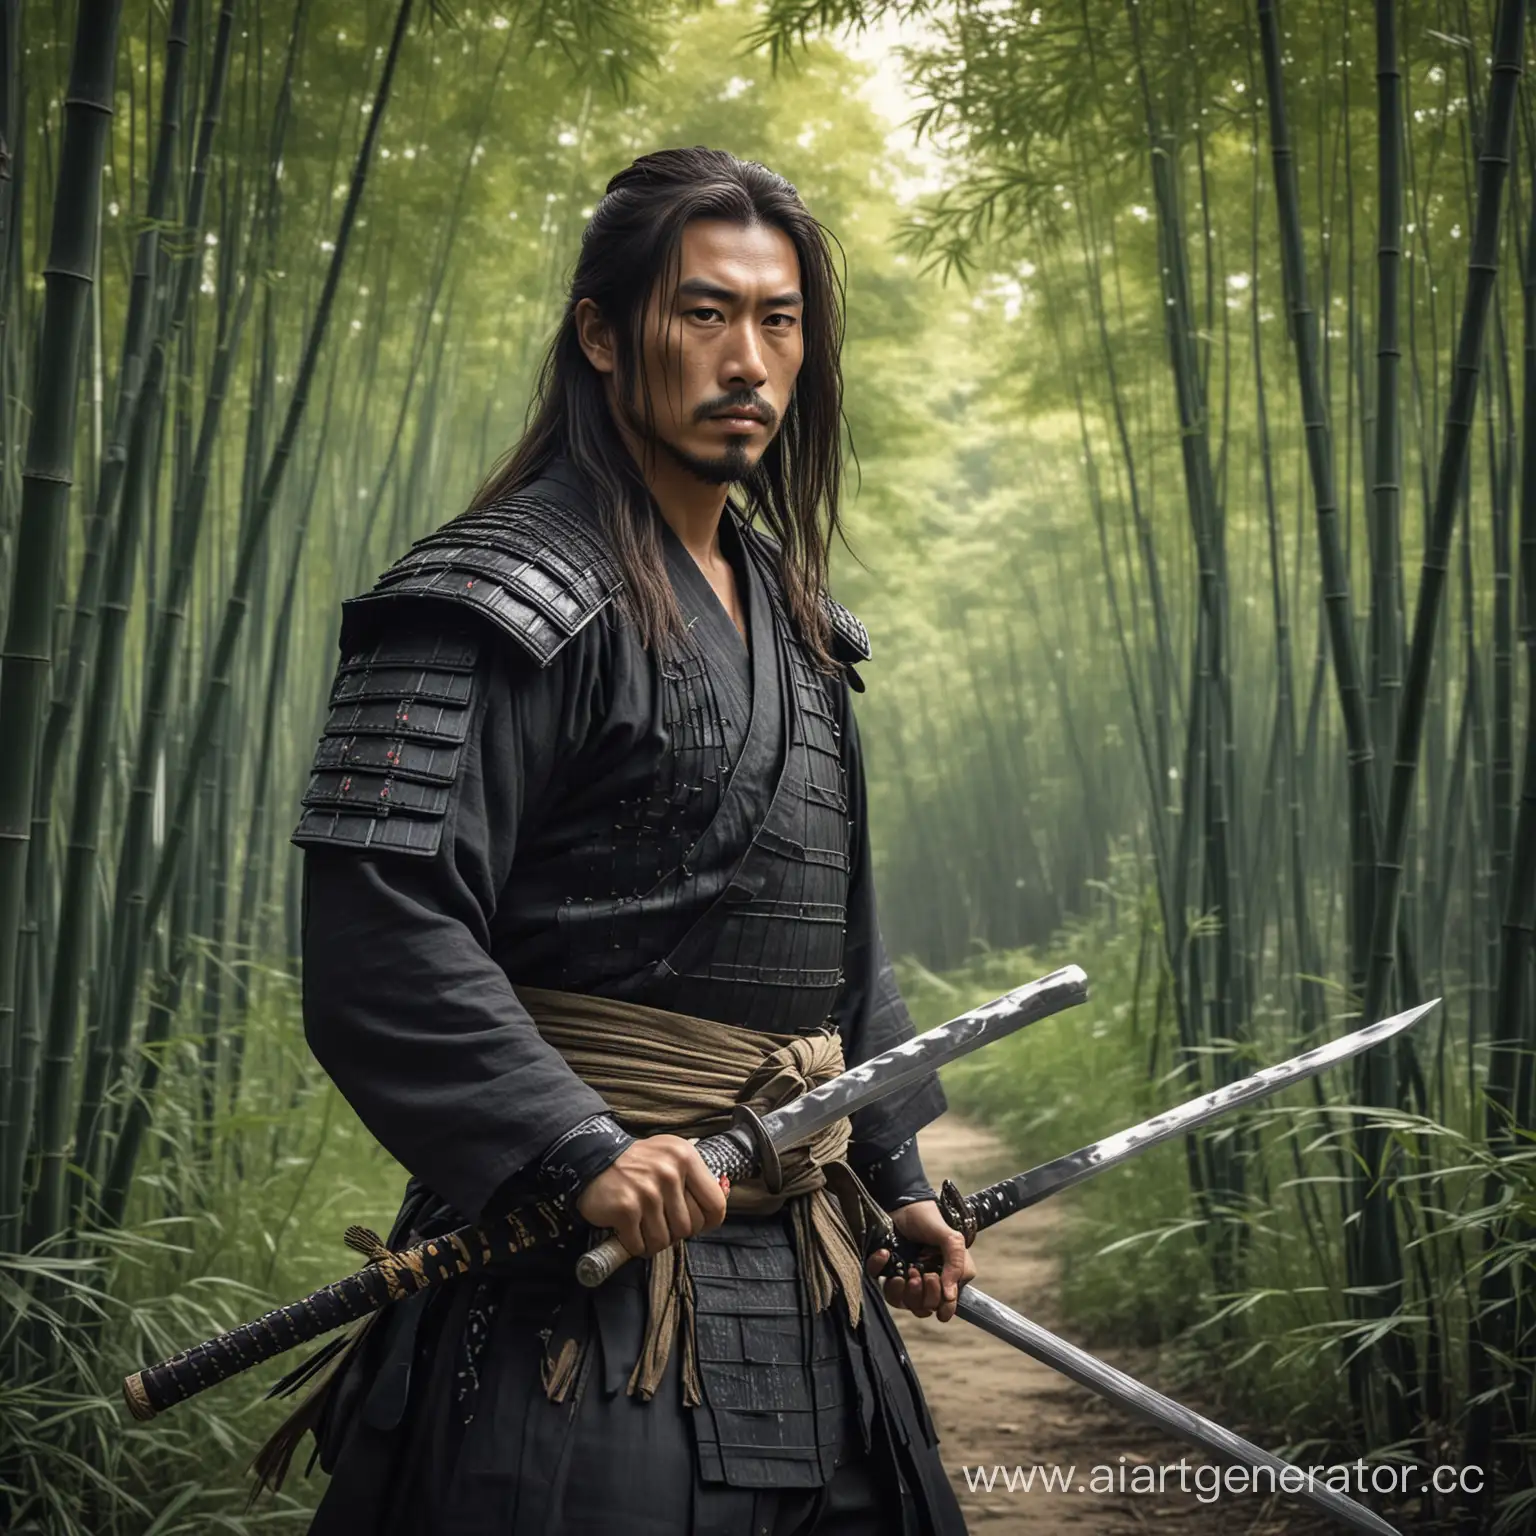 Samurai-Warrior-with-Katana-in-Bamboo-Grove